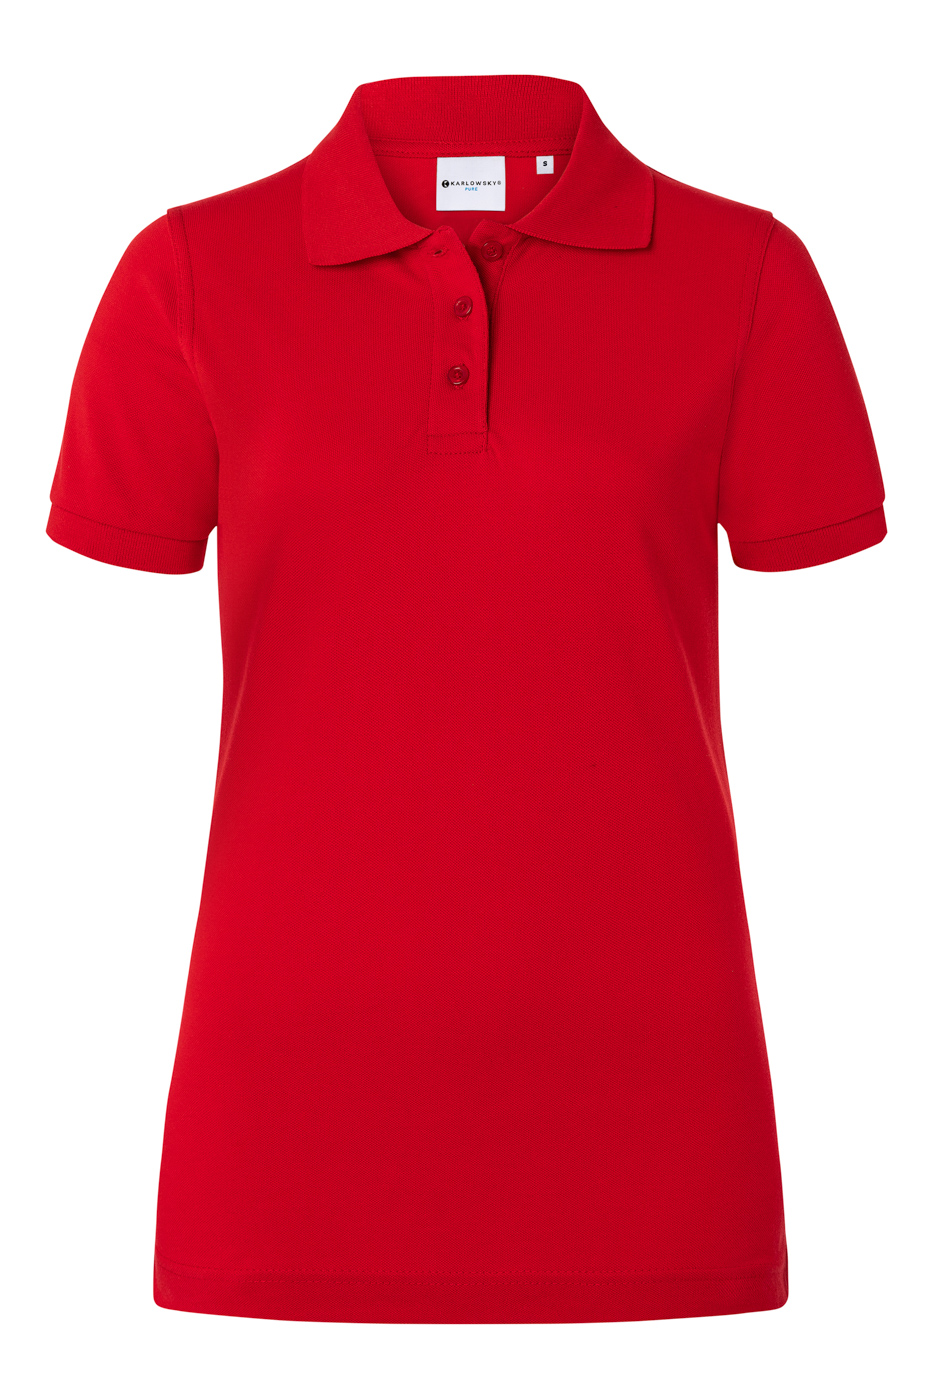 Damen Workwear Poloshirt Basic - Größe: S